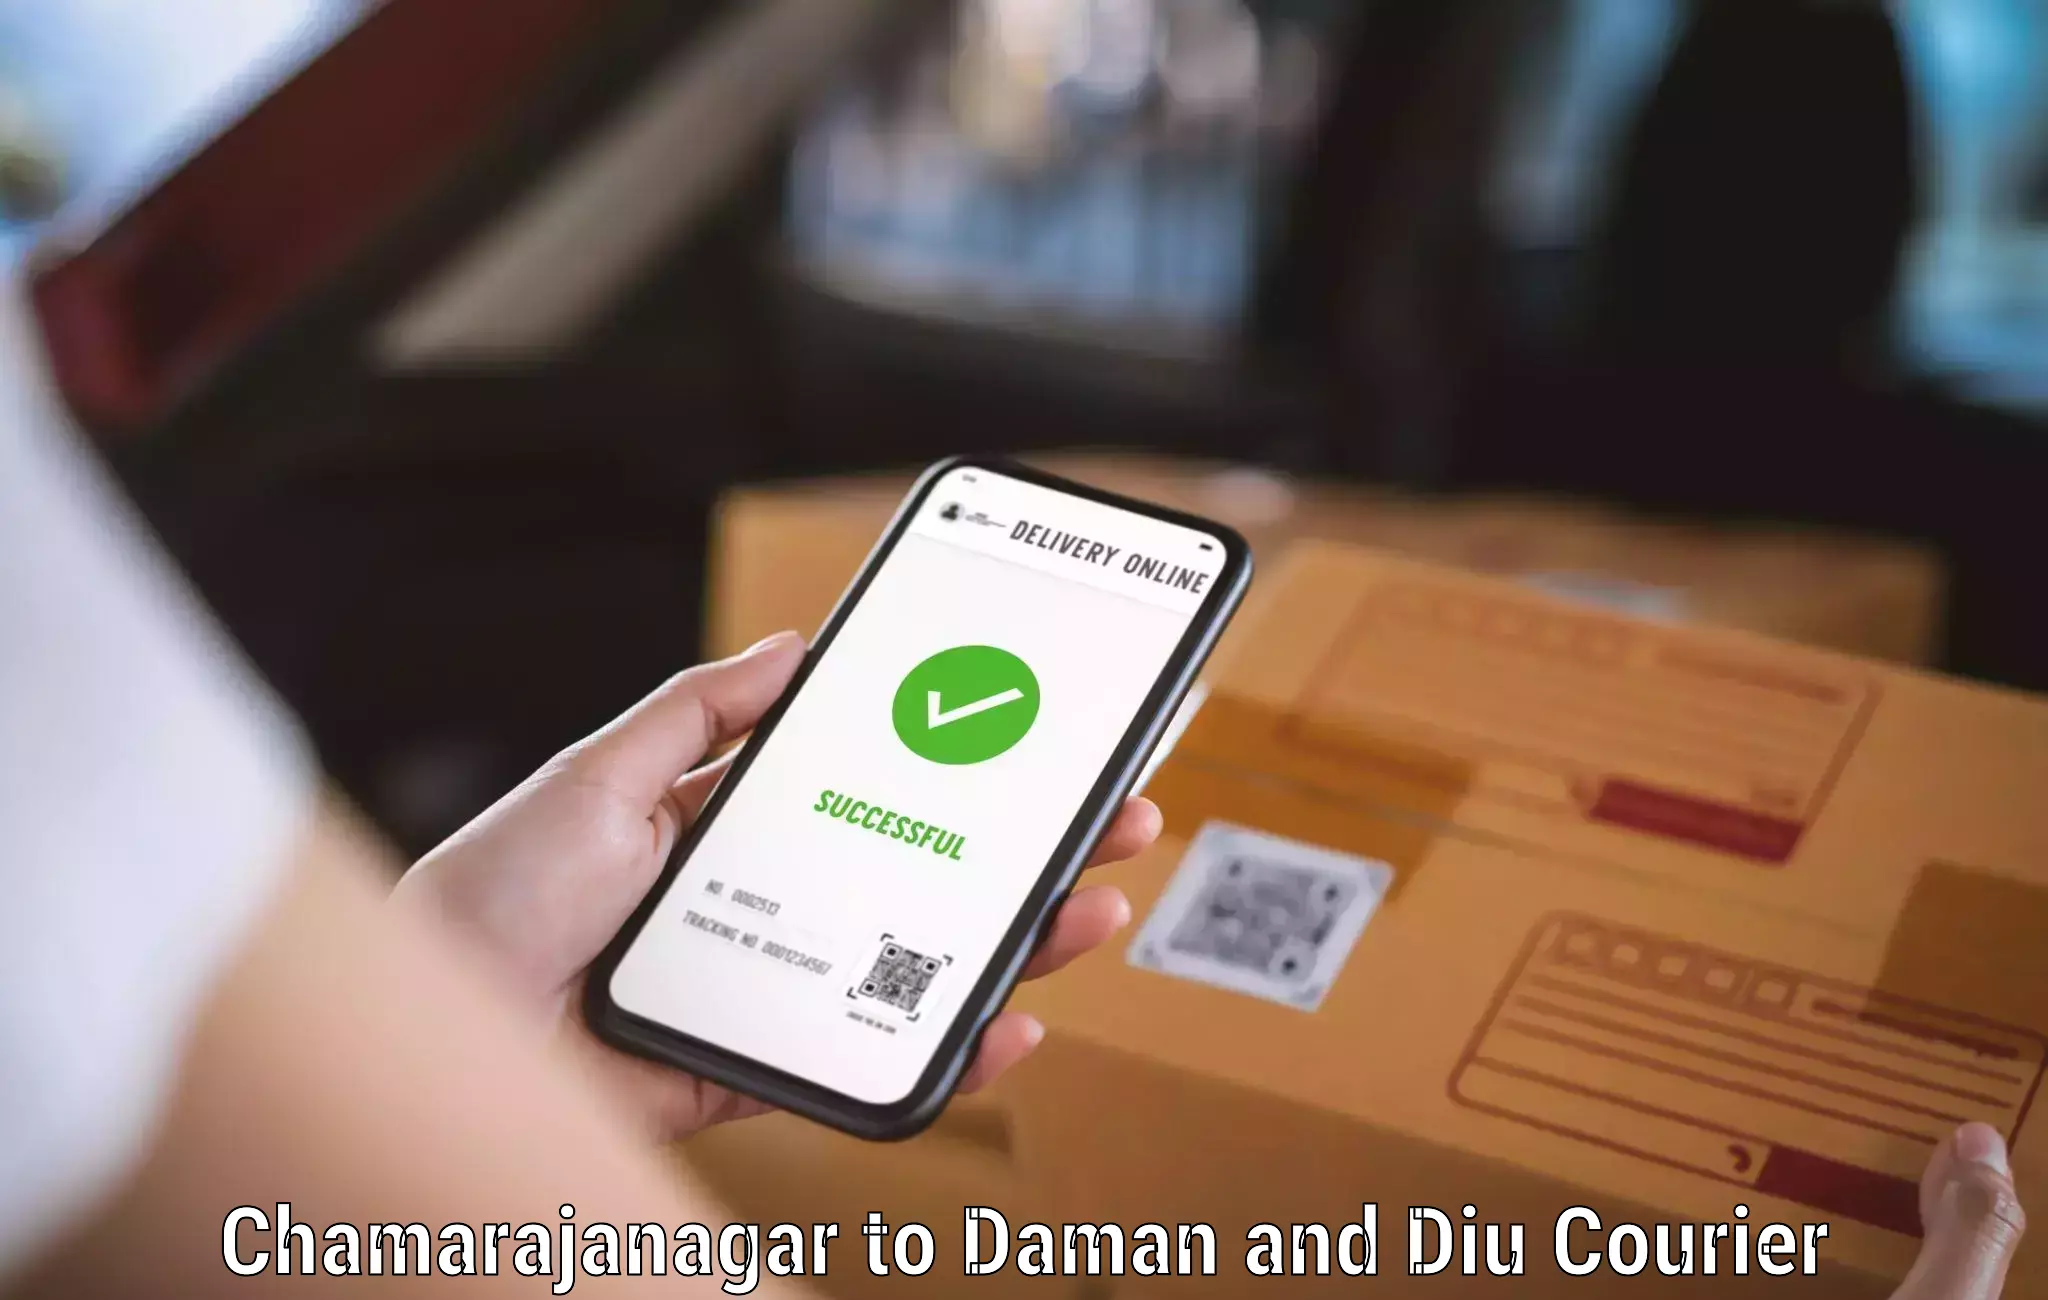 Logistics service provider Chamarajanagar to Daman